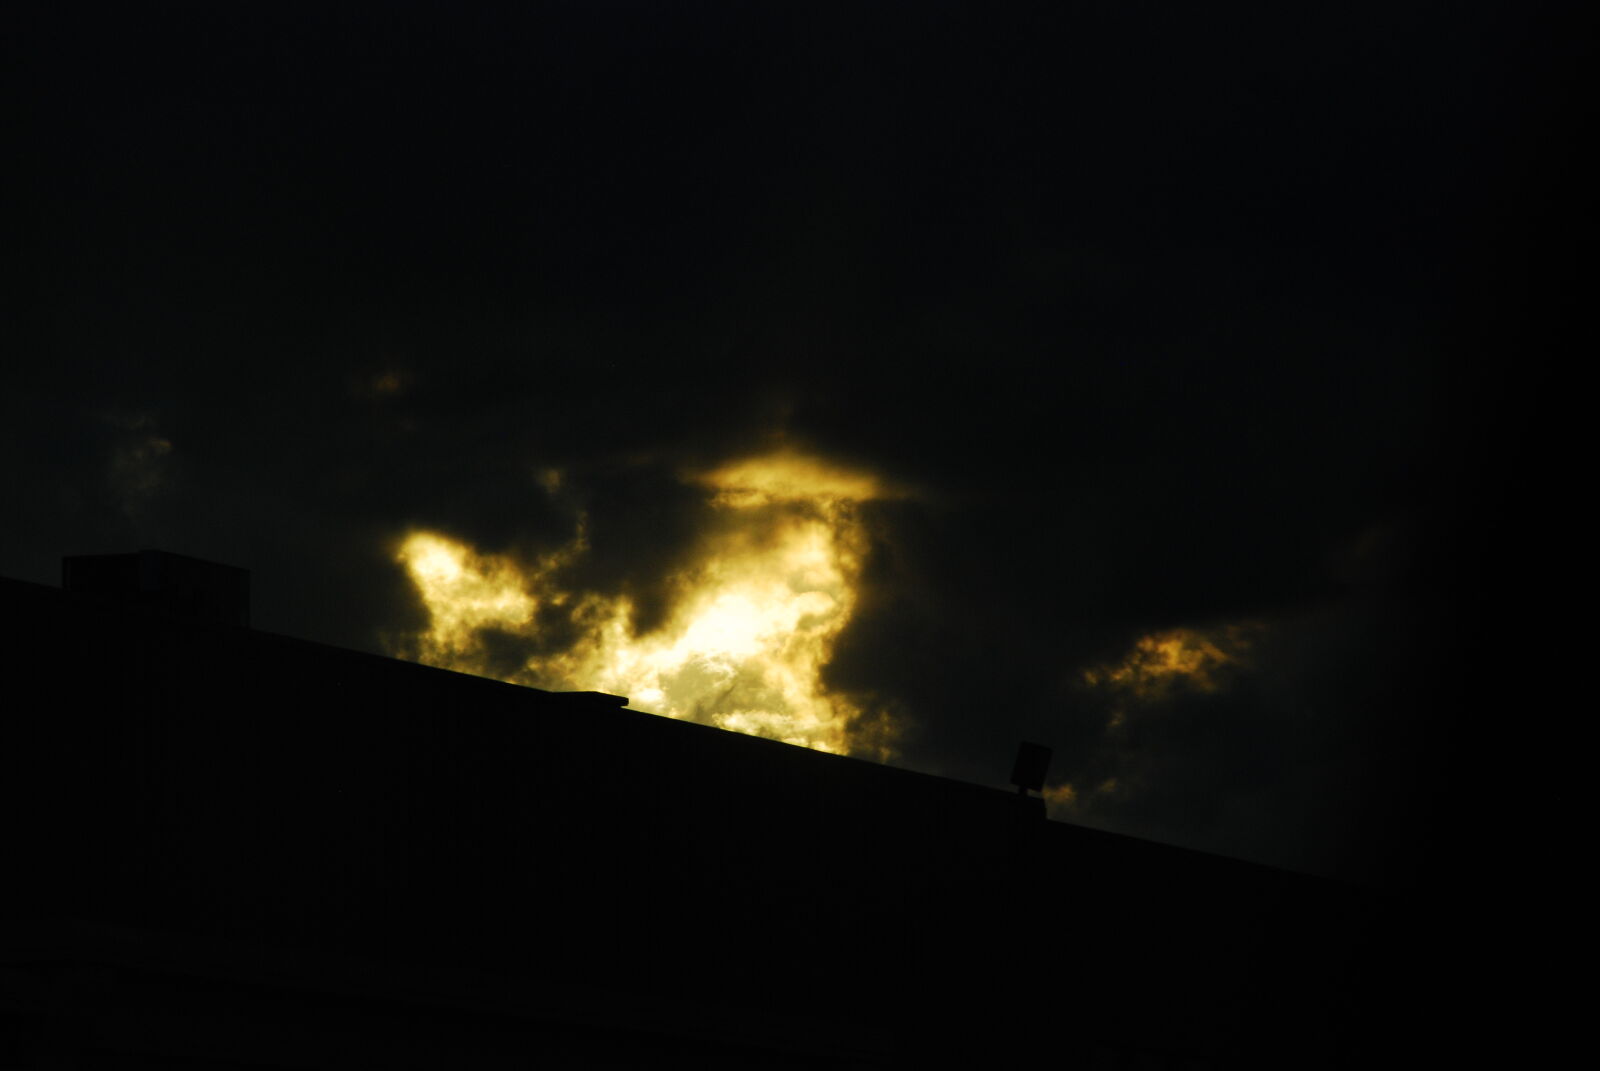 Nikon D80 sample photo. Sunset photography